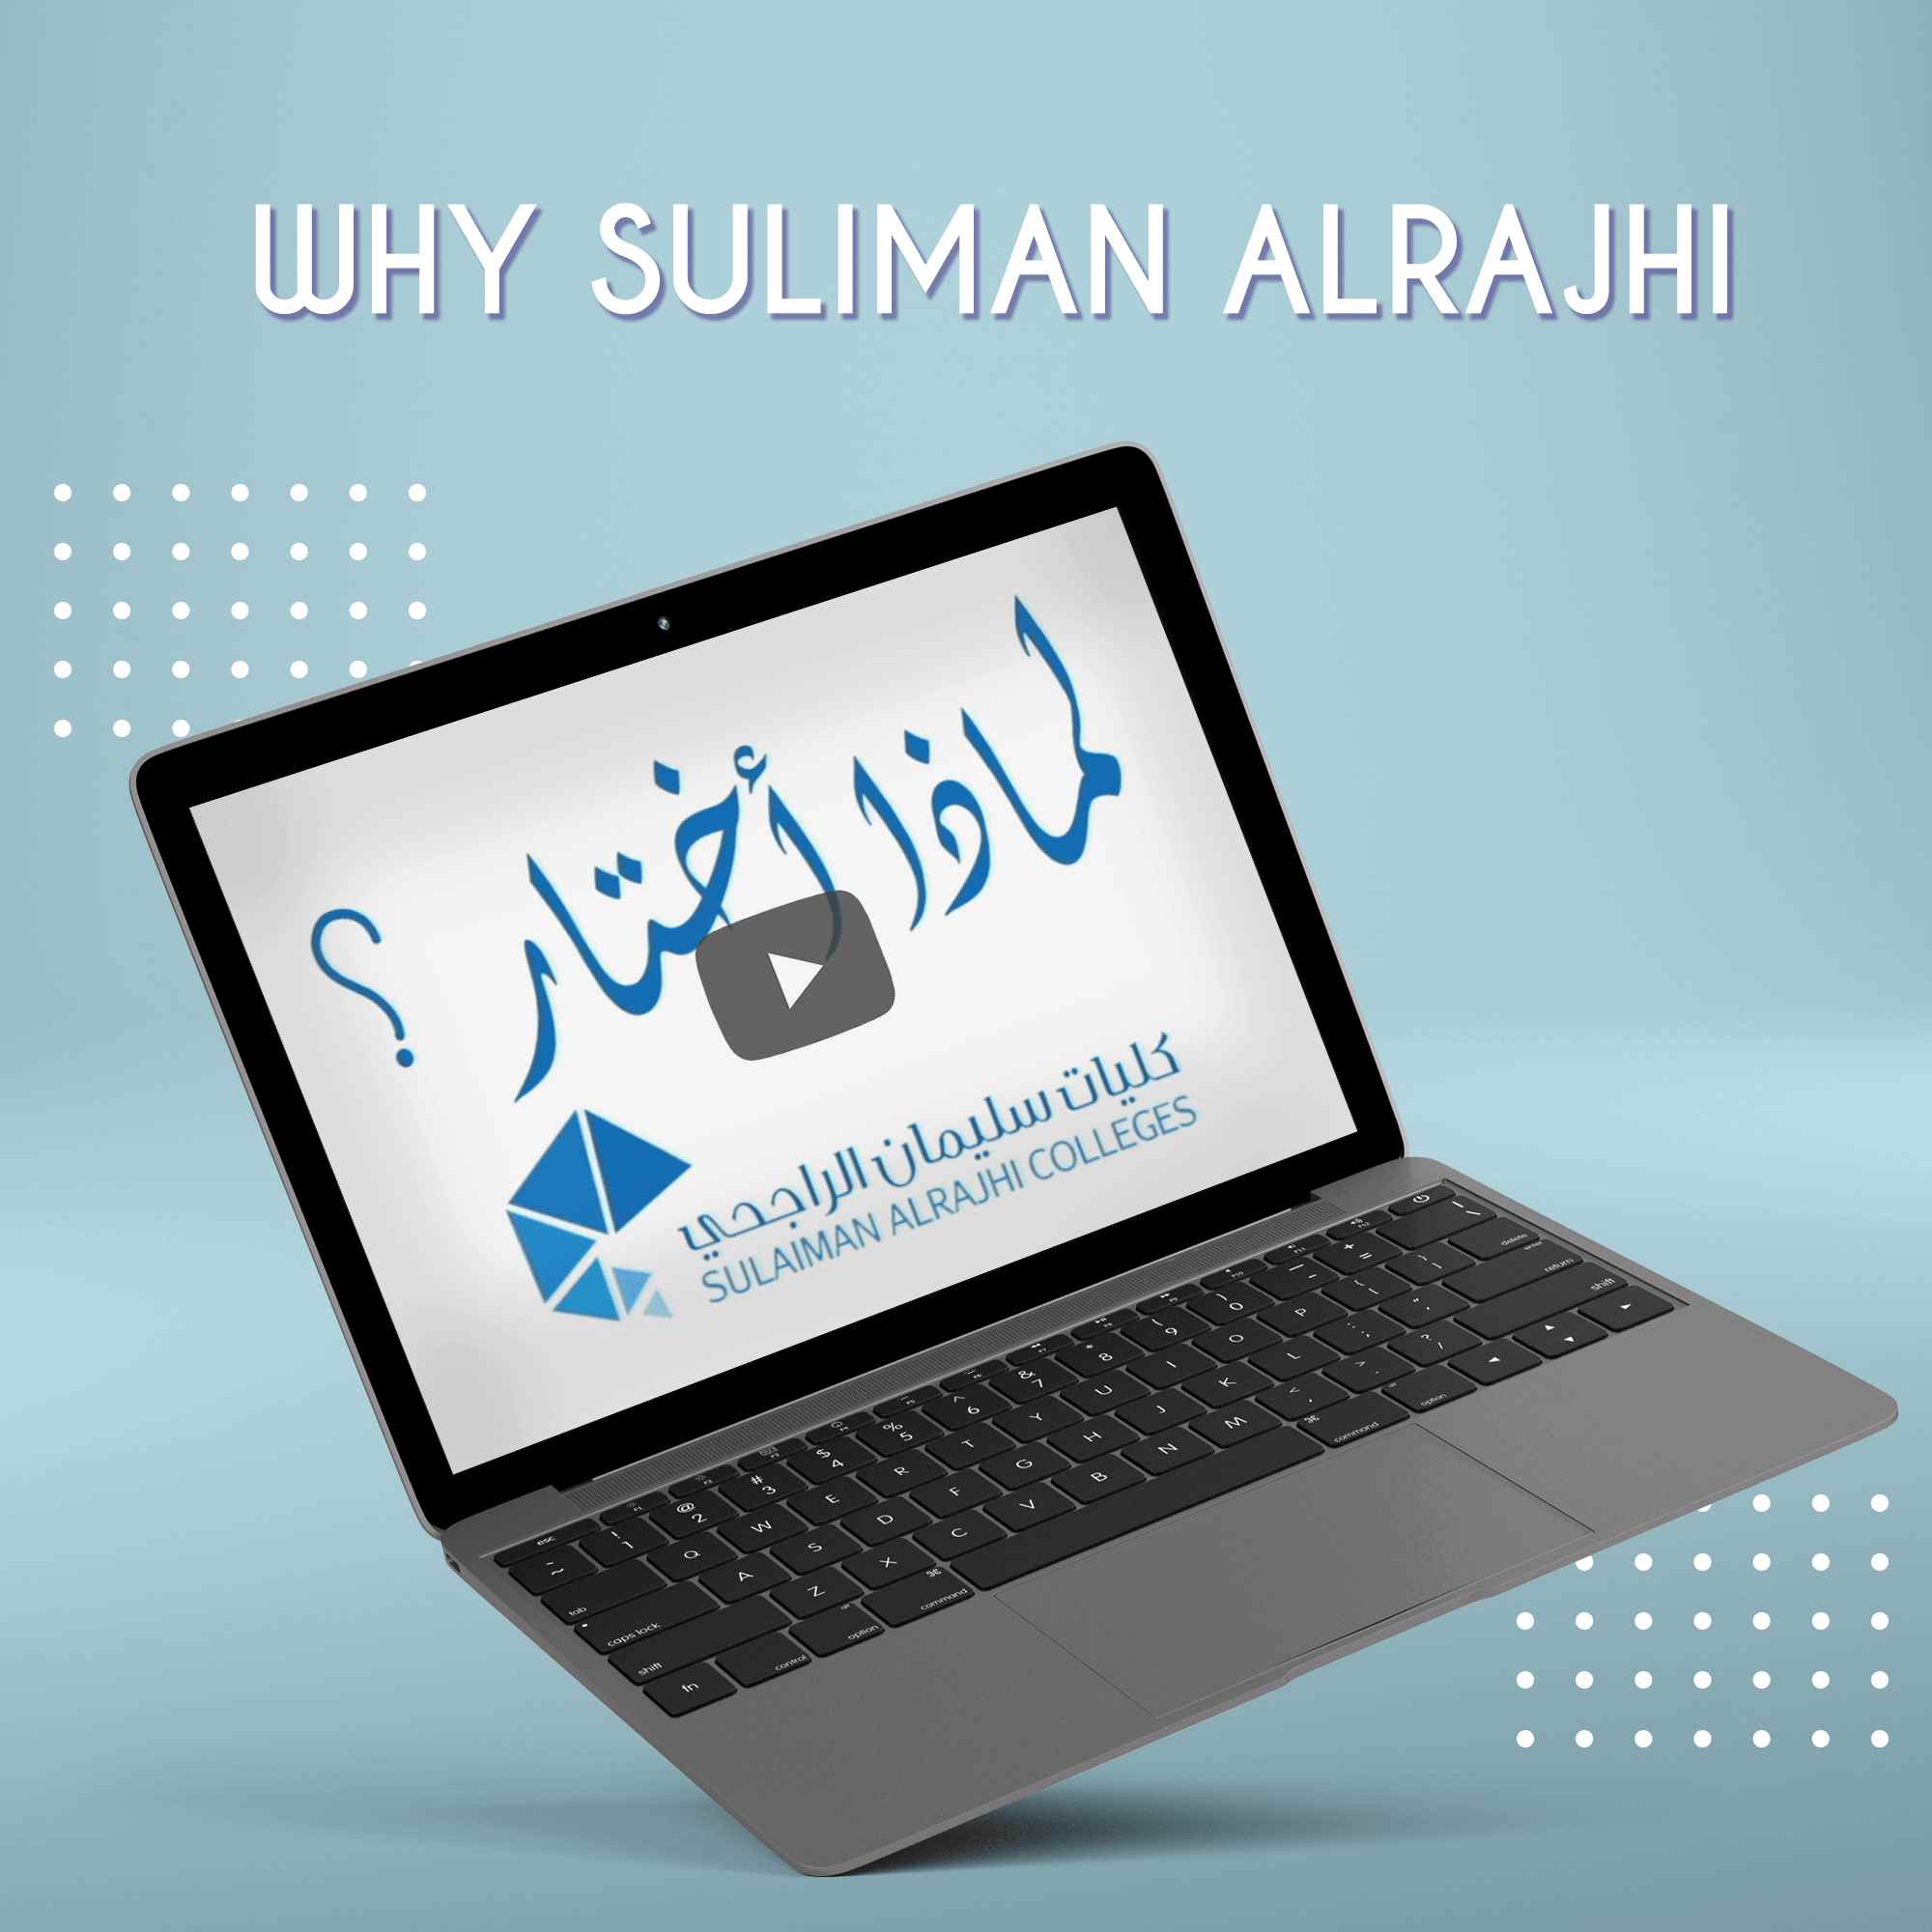 Why Suliman Alrajhi